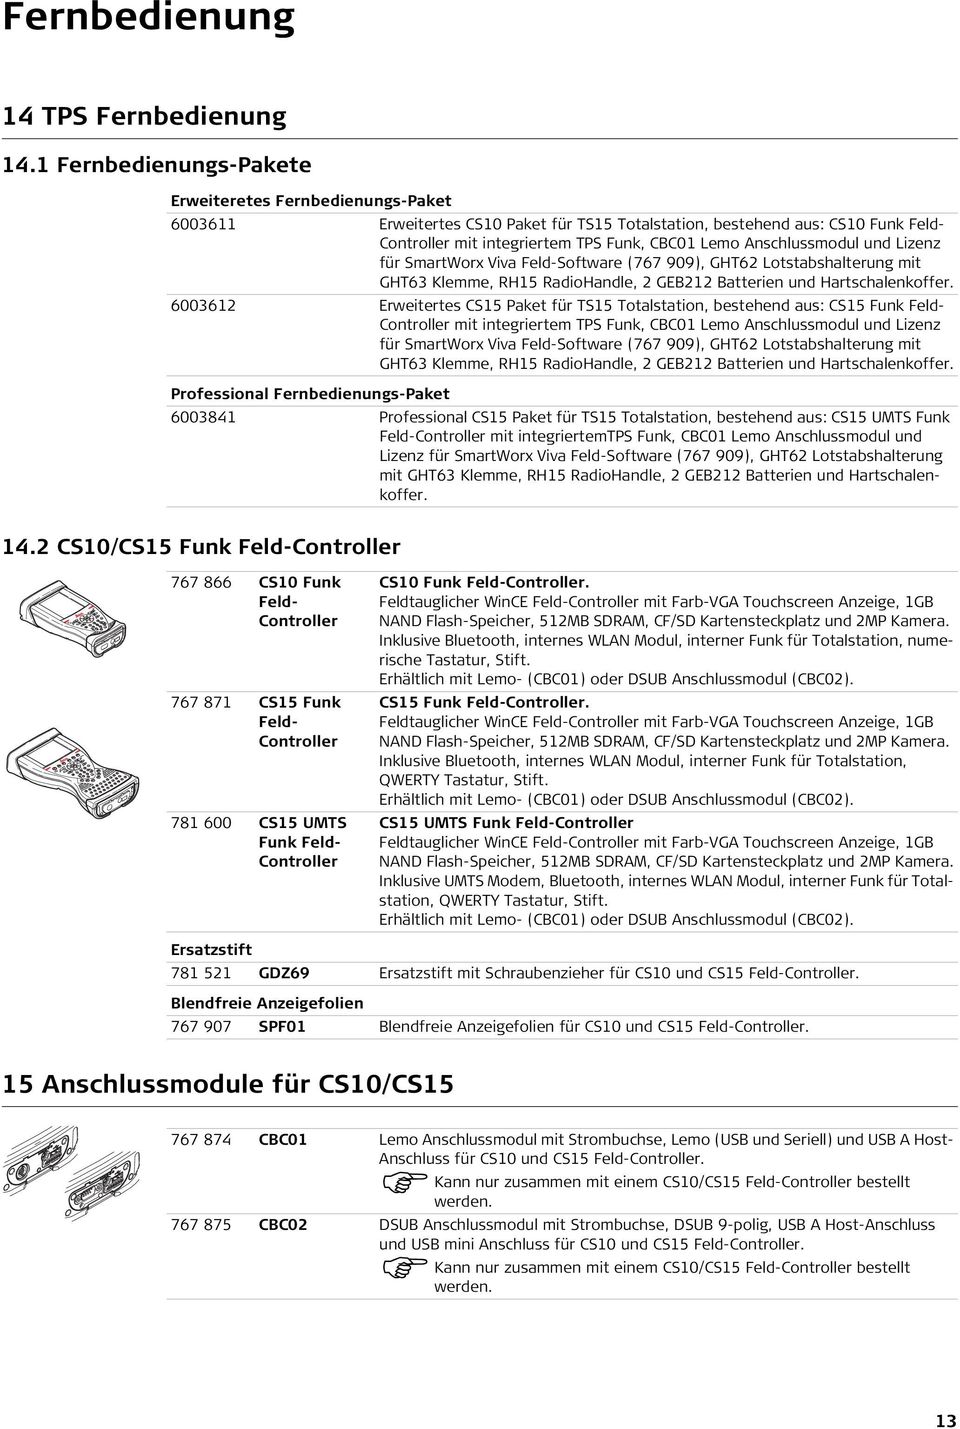 Anschlussmodul und Lizenz für SmartWorx Viva FeldSoftware (767 909), GHT62 Lotstabshalterung mit GHT63 Klemme, RH15 RadioHandle, 2 GEB212 Batterien und Hartschalenkoffer.